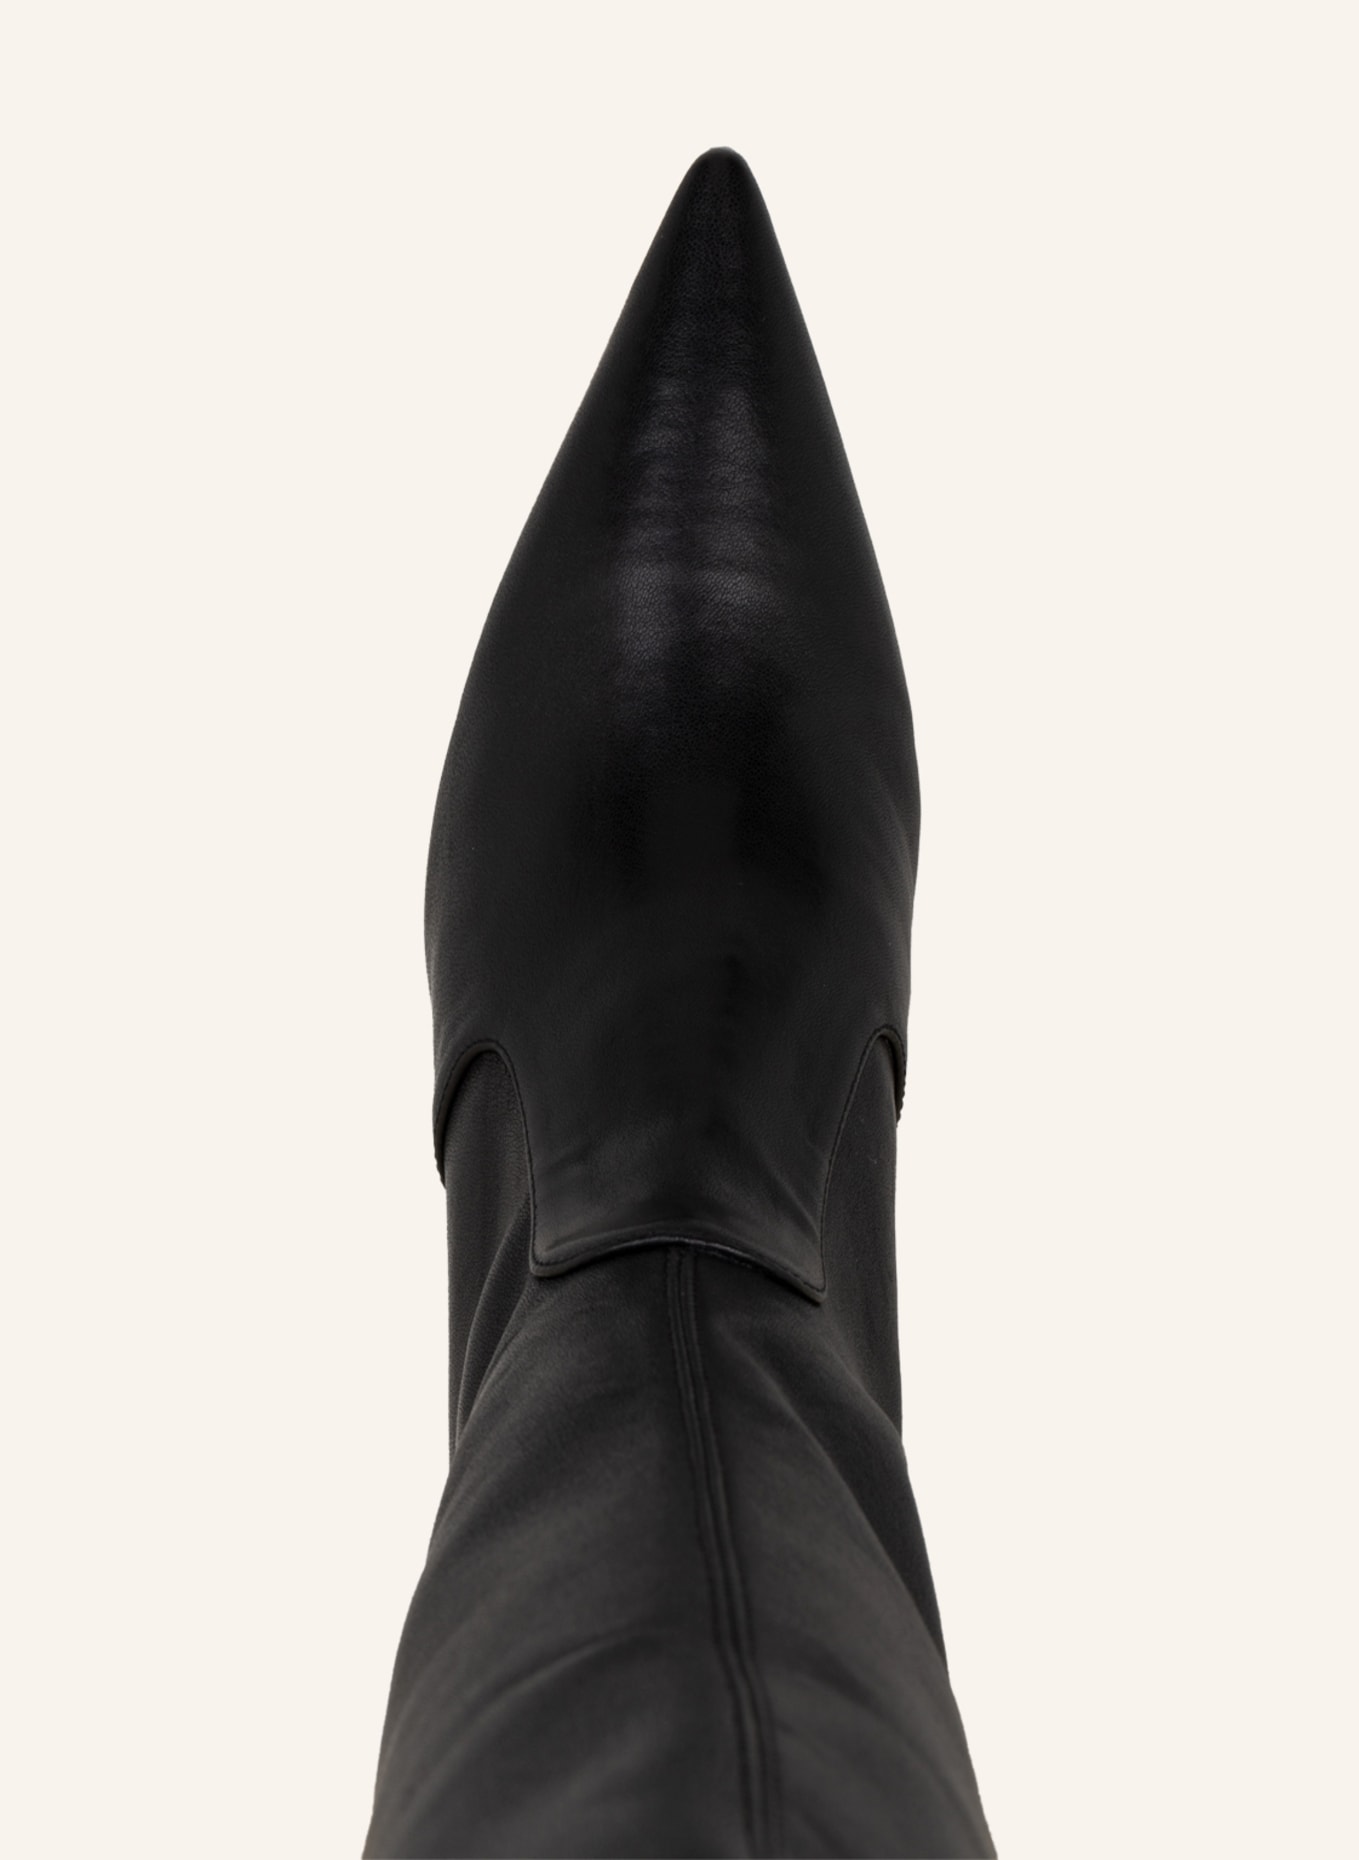 STUART WEITZMAN Boots, Color: BLACK (Image 5)